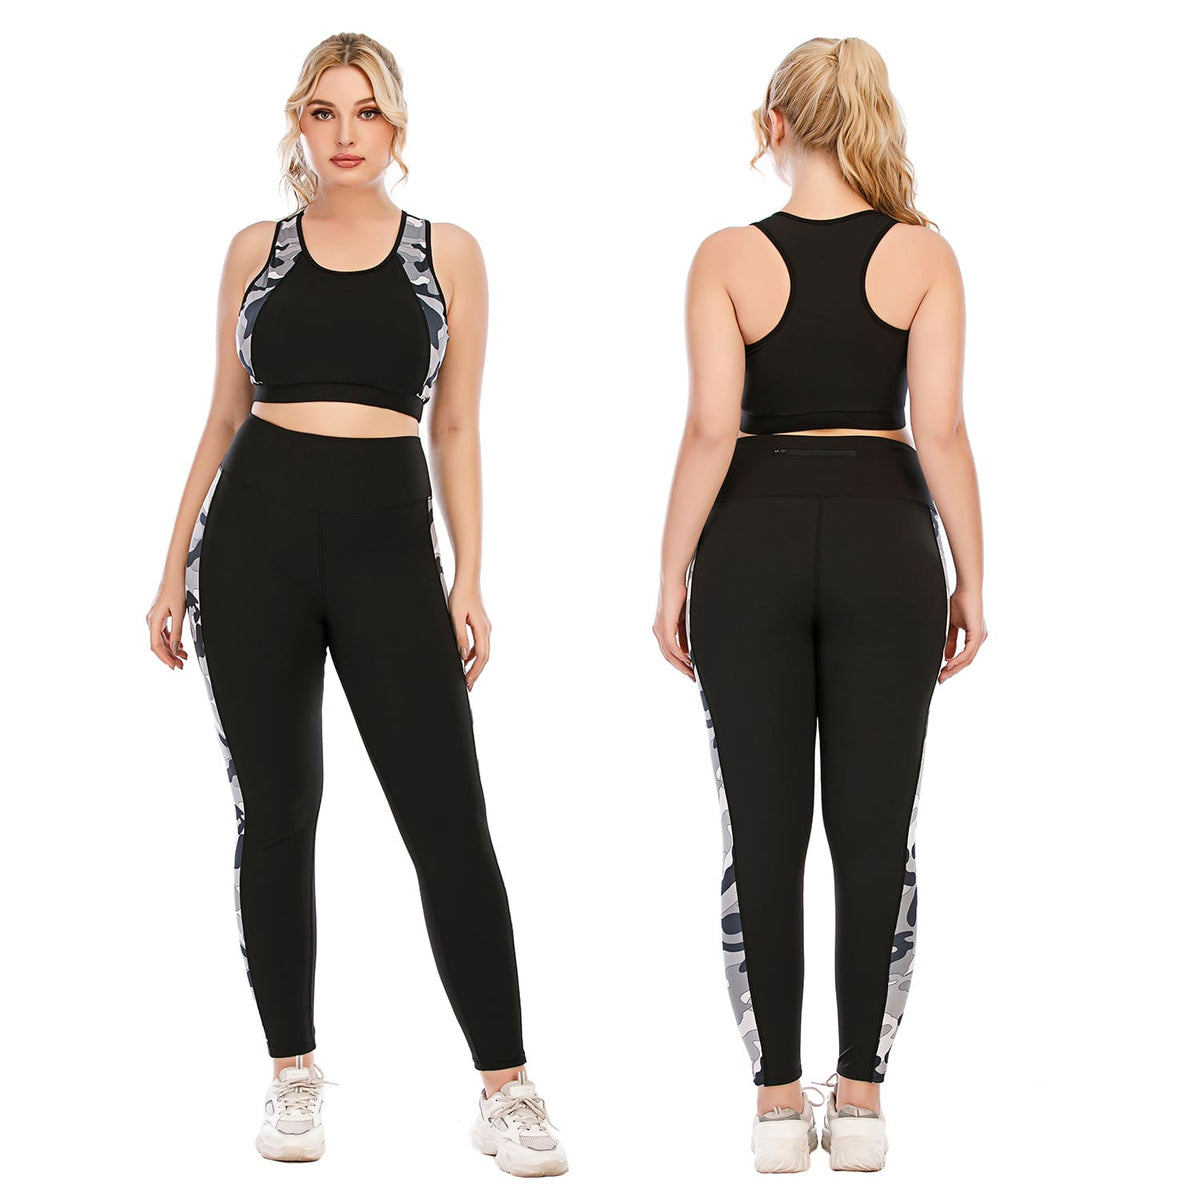 Plus Size Yoga Clothes Black Workout Set for Women